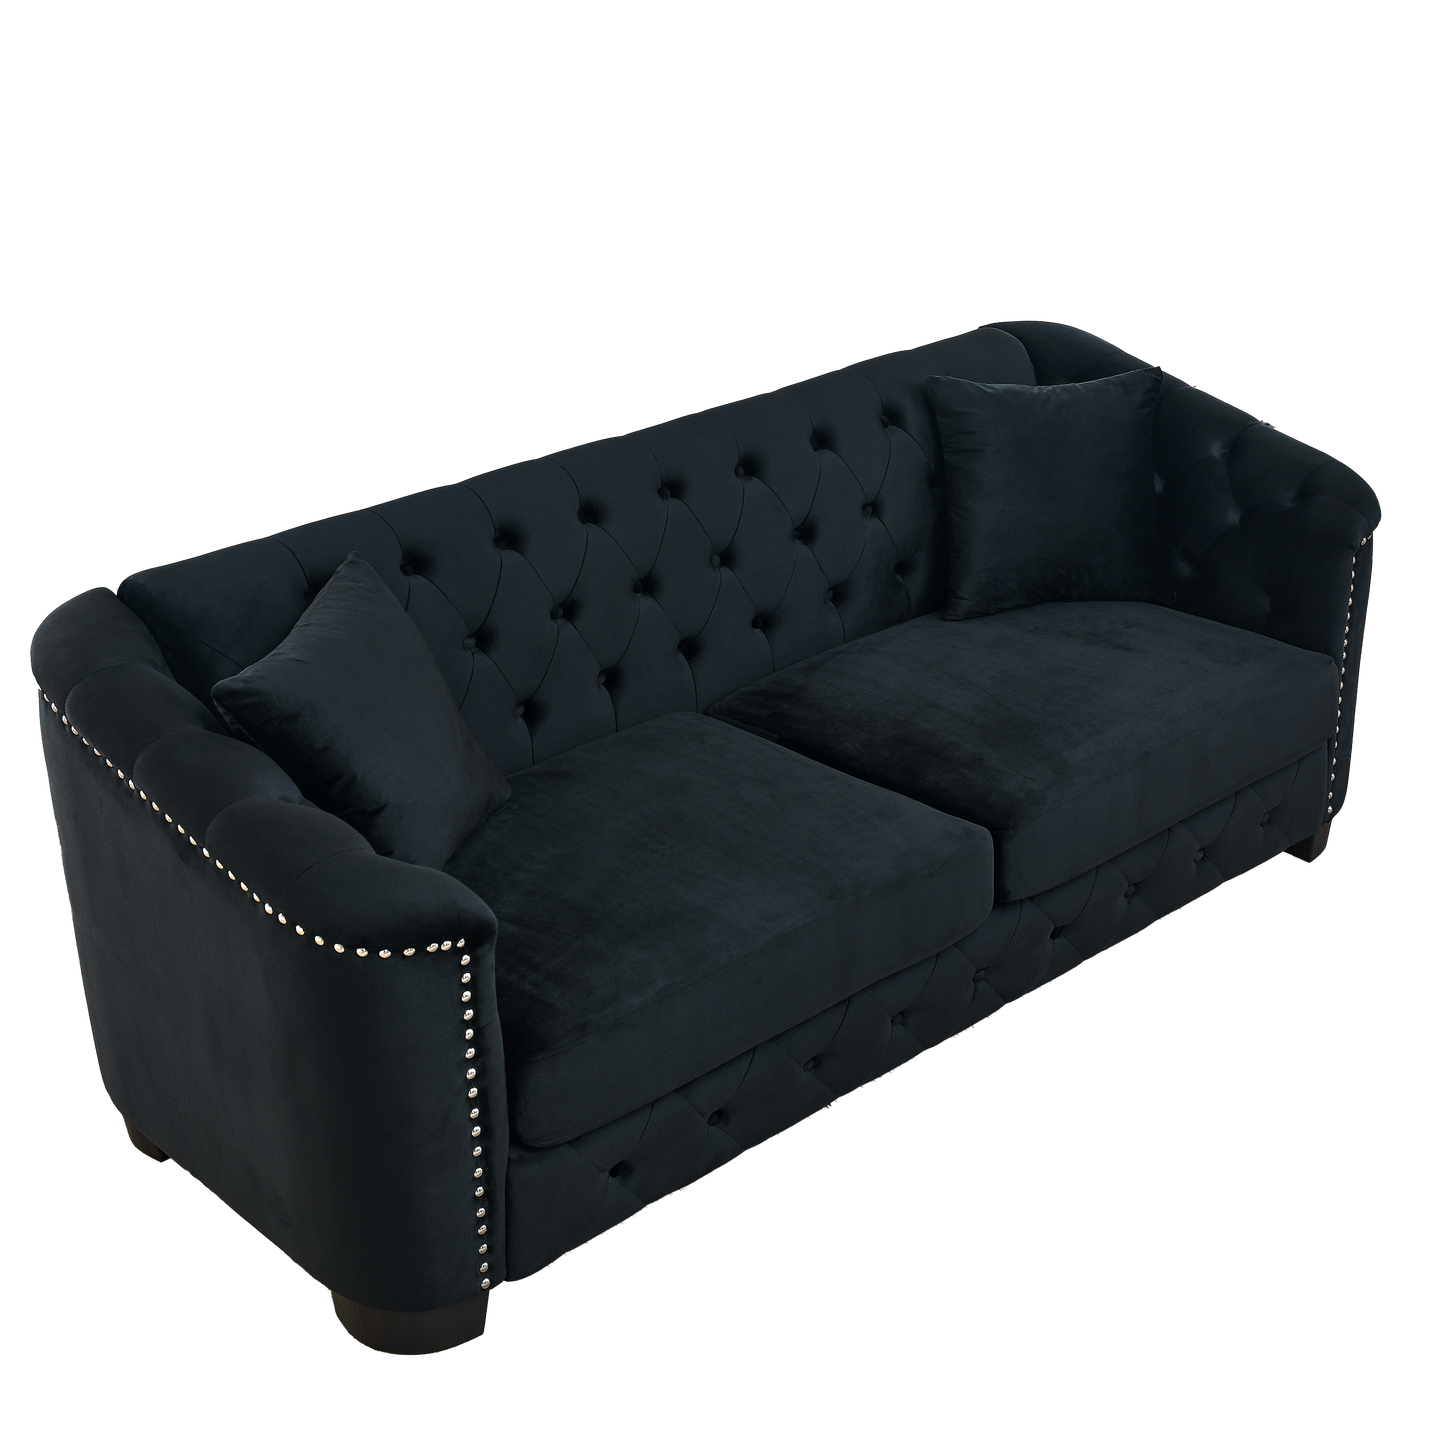 Tufted Black Velvet Living Room Sofa Set